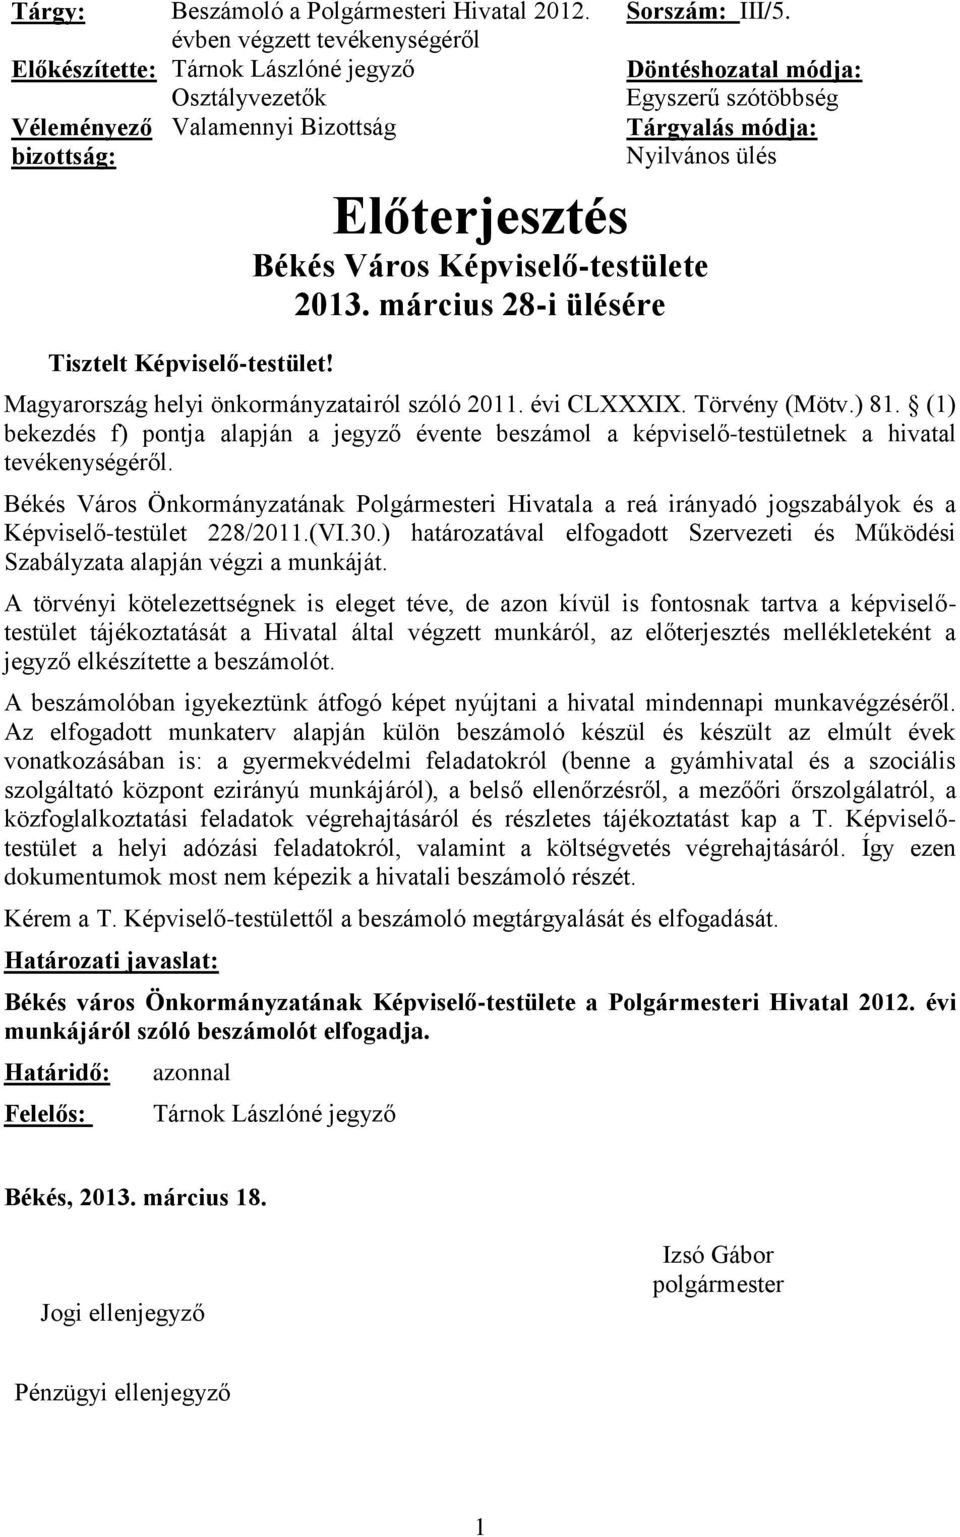 Döntéshozatal módja: Egyszerű szótöbbség Tárgyalás módja: Nyilvános ülés Előterjesztés Békés Város Képviselő-testülete 2013. március 28-i ülésére Magyarország helyi önkormányzatairól szóló 2011.